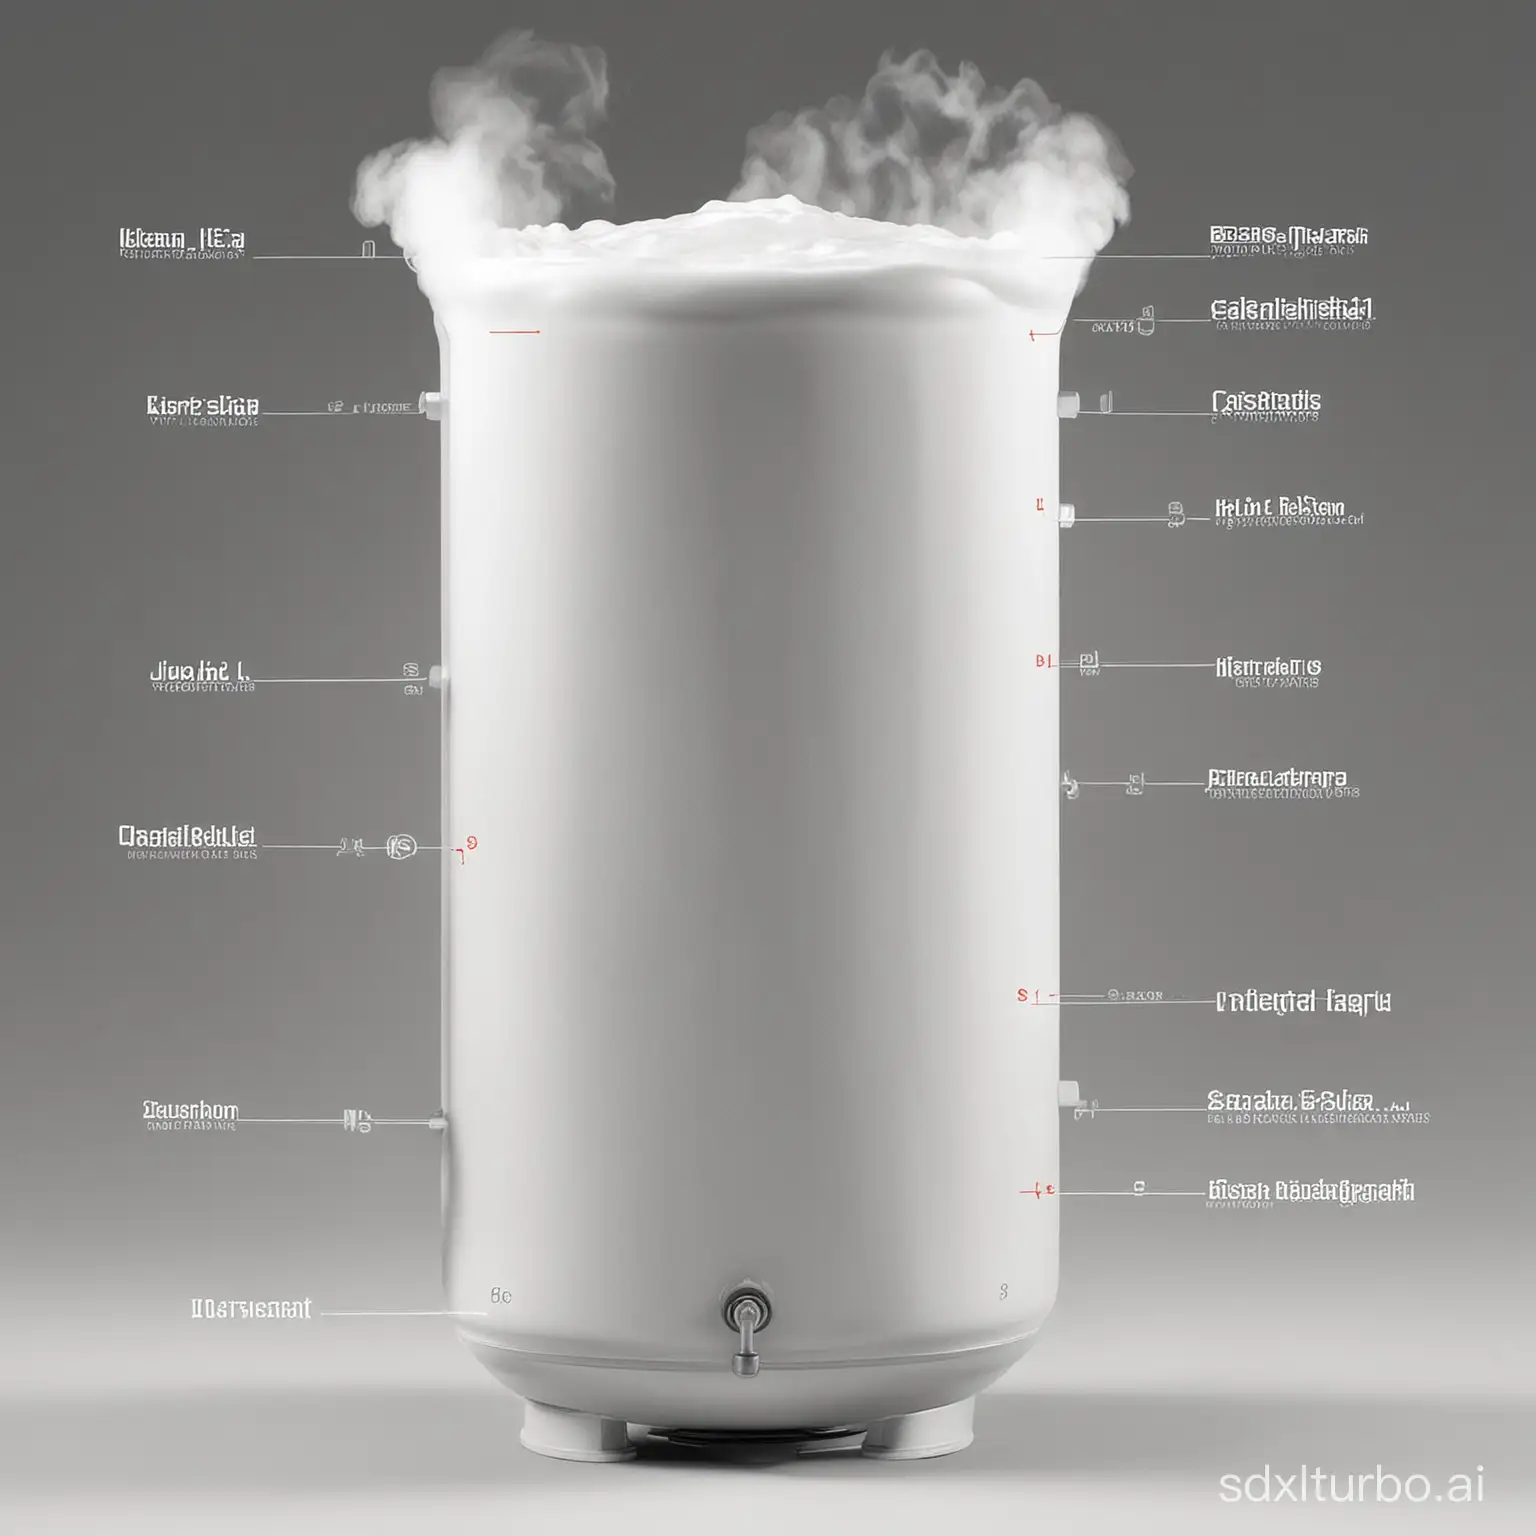 Detailed diagram of liquid nitrogen